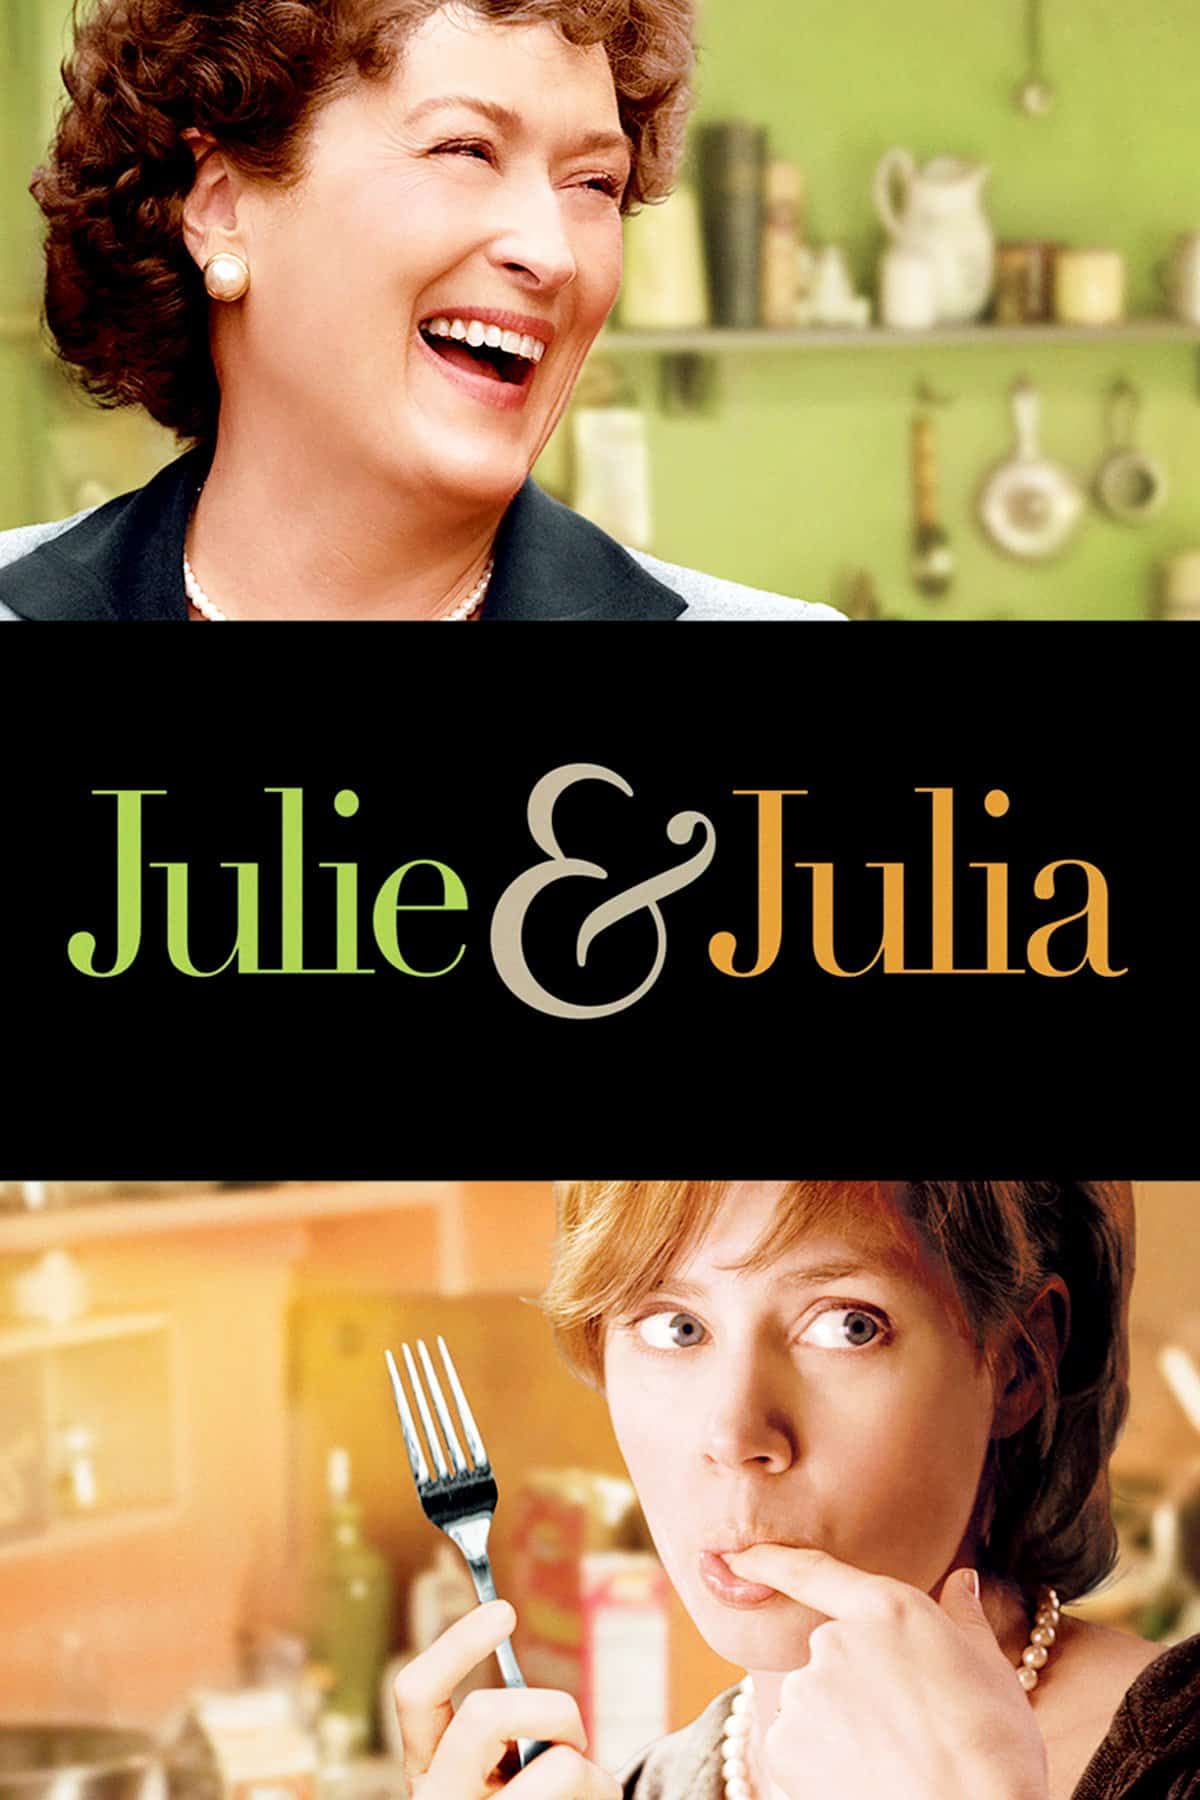 Julie and Julia, 2009 